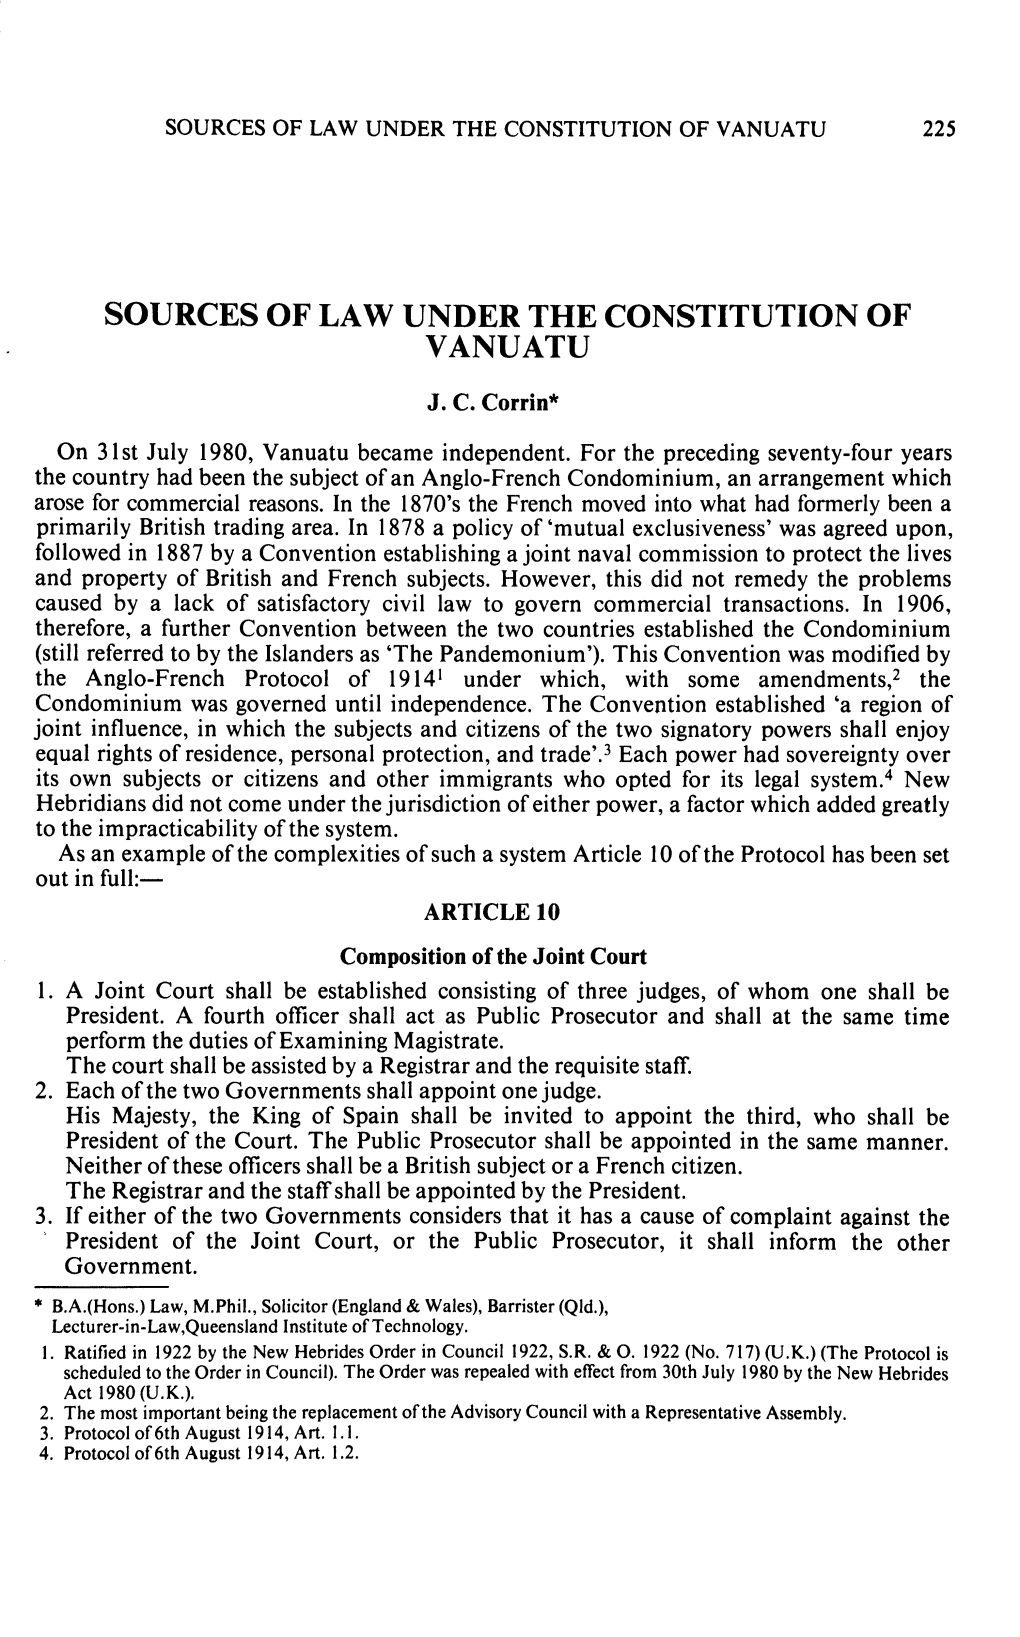 Sources of Law Under the Constitution of Vanuatu 225